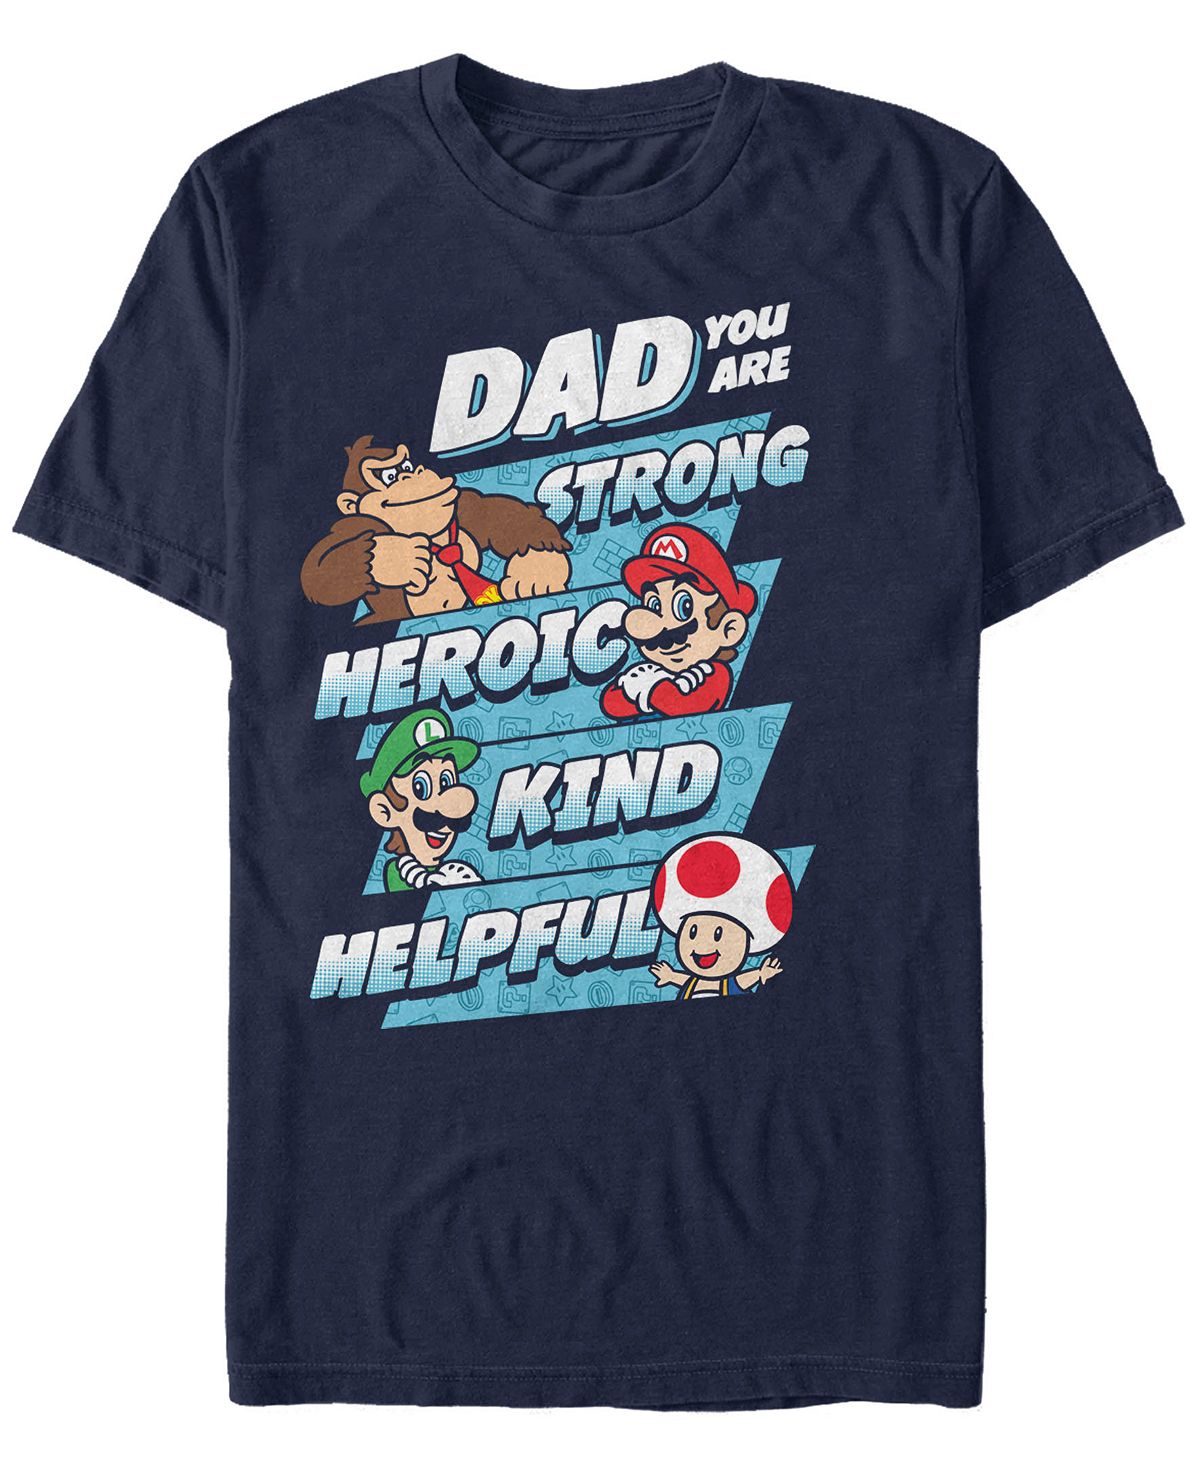 Мужская футболка с коротким рукавом nintendo super mario dad strengths Fifth Sun, синий рюкзак луиджи и йоши mario голубой 3